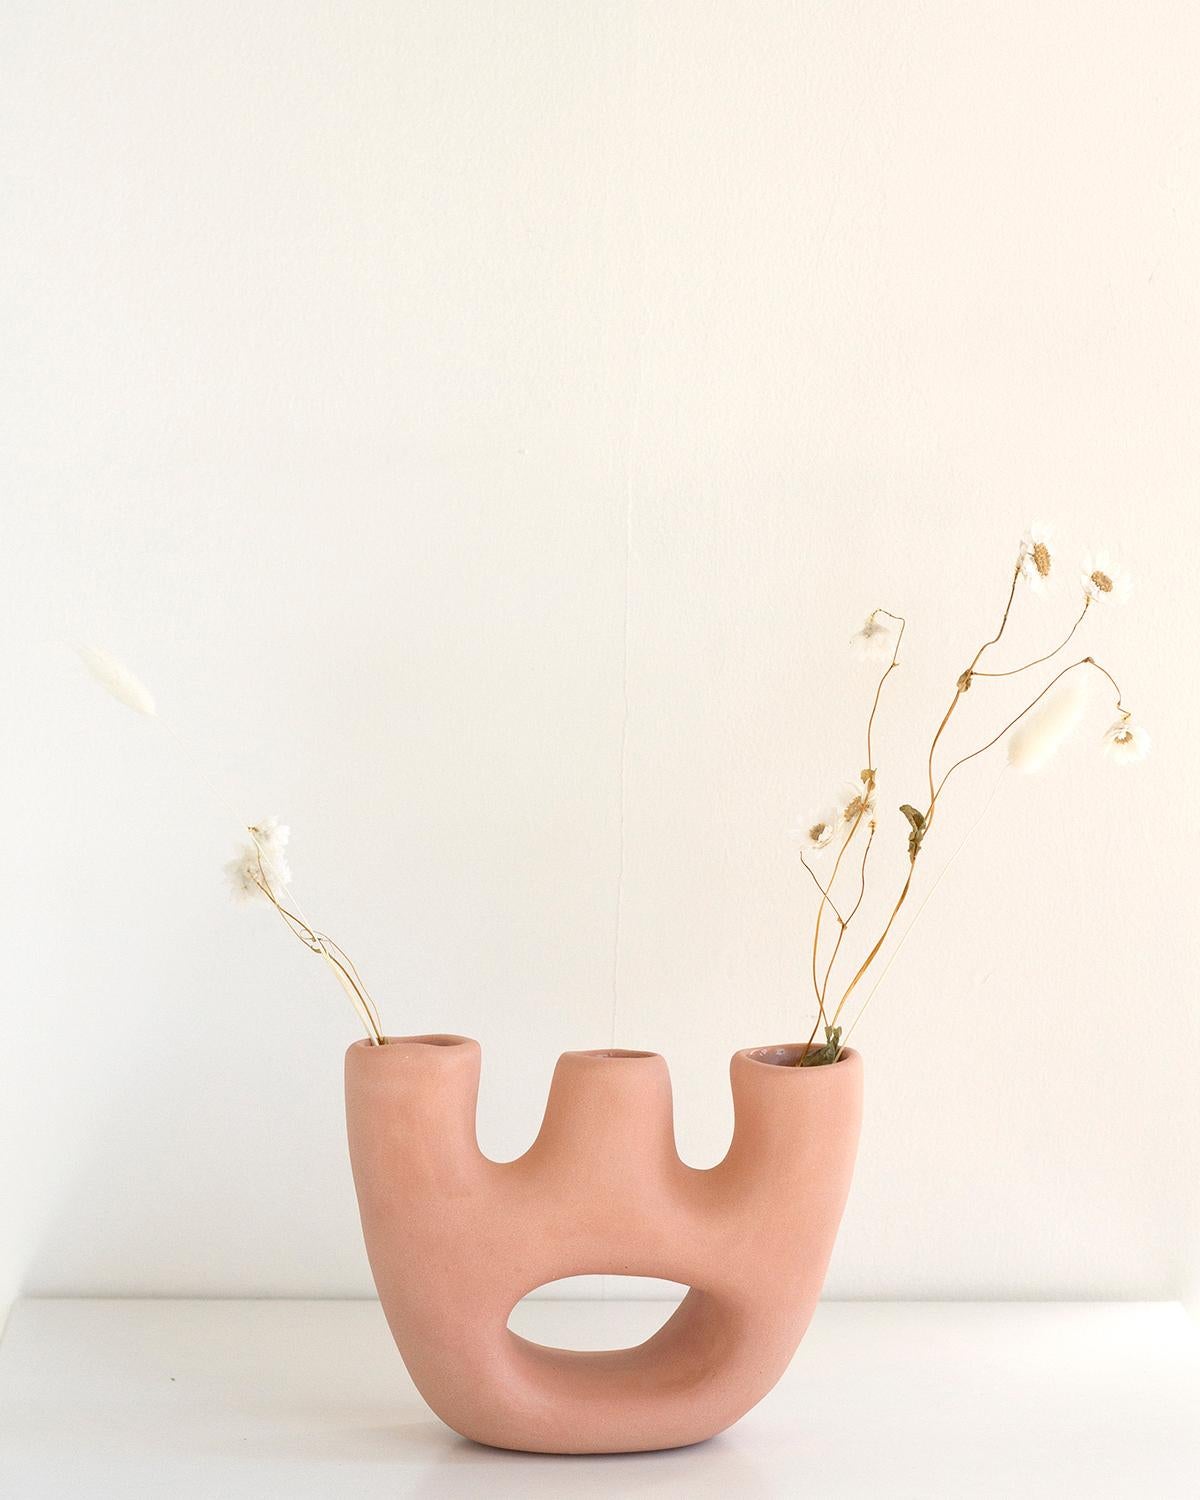 Schmücken Sie Ihr Zuhause mit dieser einzigartigen handgefertigten Keramikvase. Das minimalistische Design ist aus Ton gefertigt und mit einer luxuriösen, matten rosa Sonderglasur versehen. Es verbindet rustikale Ästhetik mit organischen, modernen